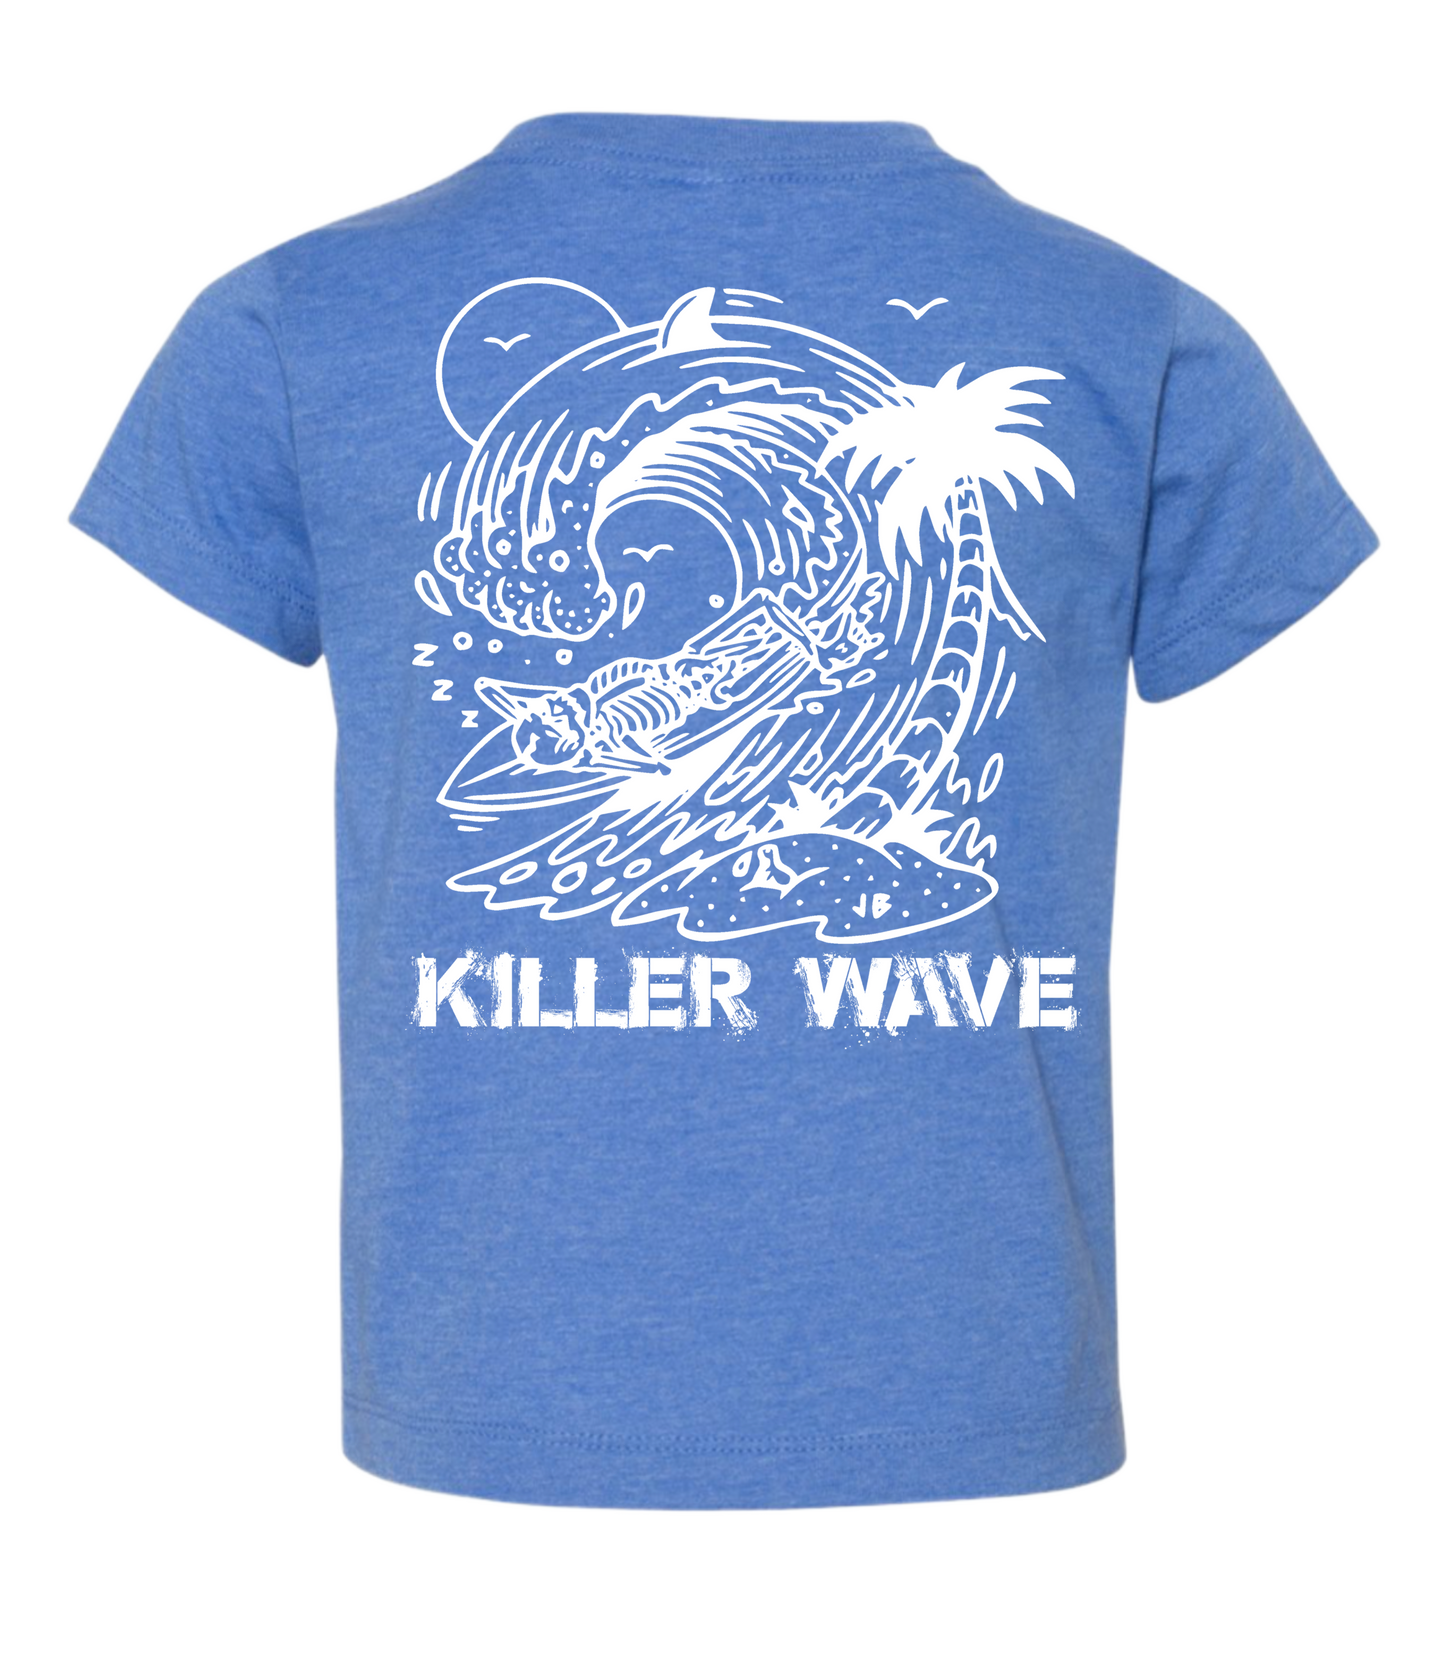 Killer wave